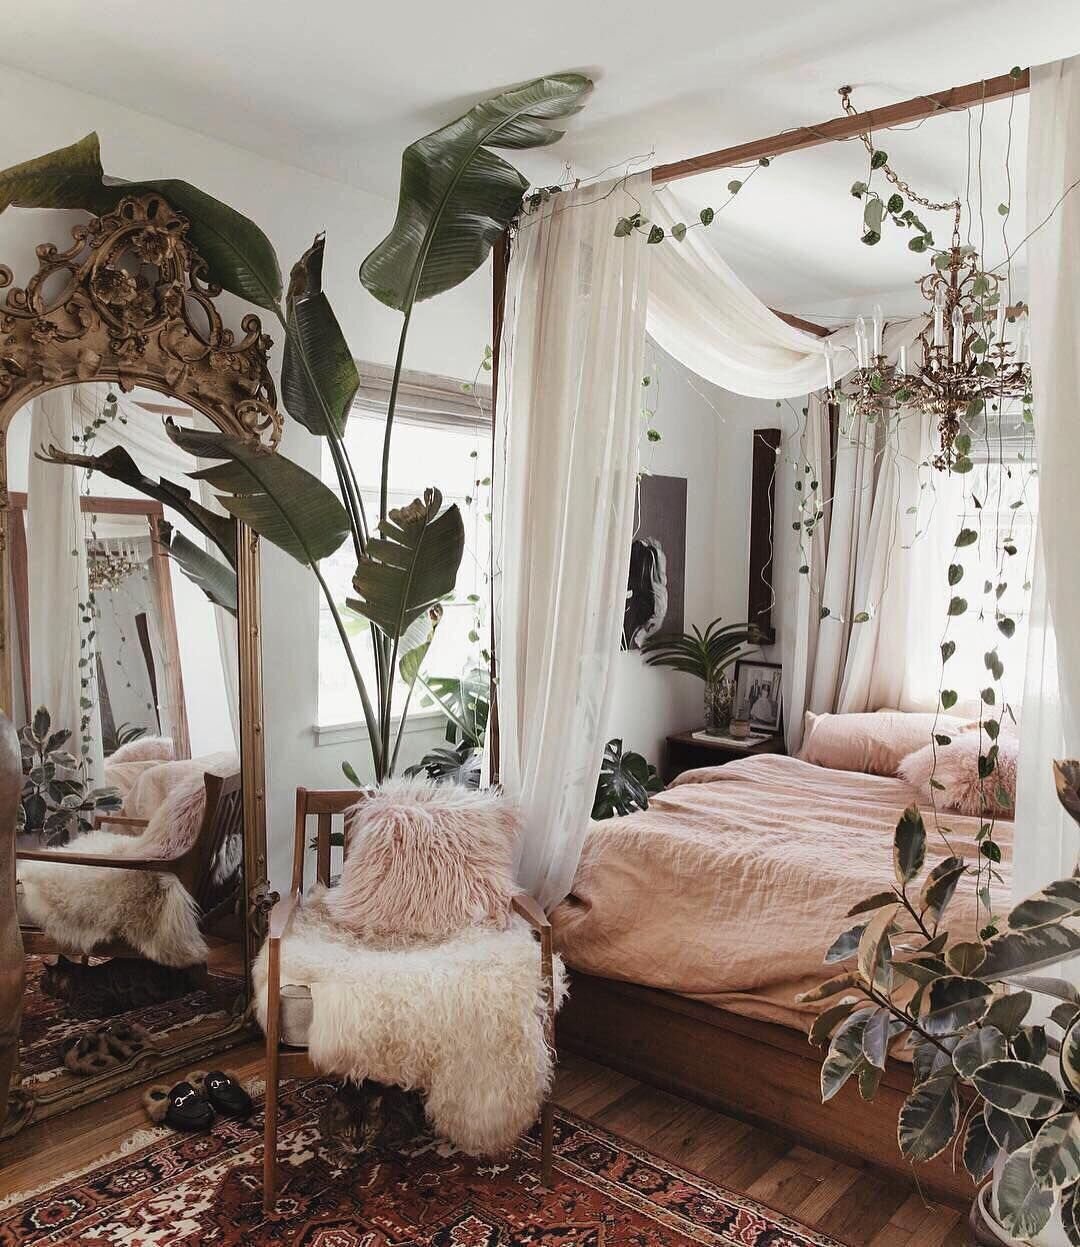 Best+of+2019-+Bedrooms+-+The+Nordroom.jpeg